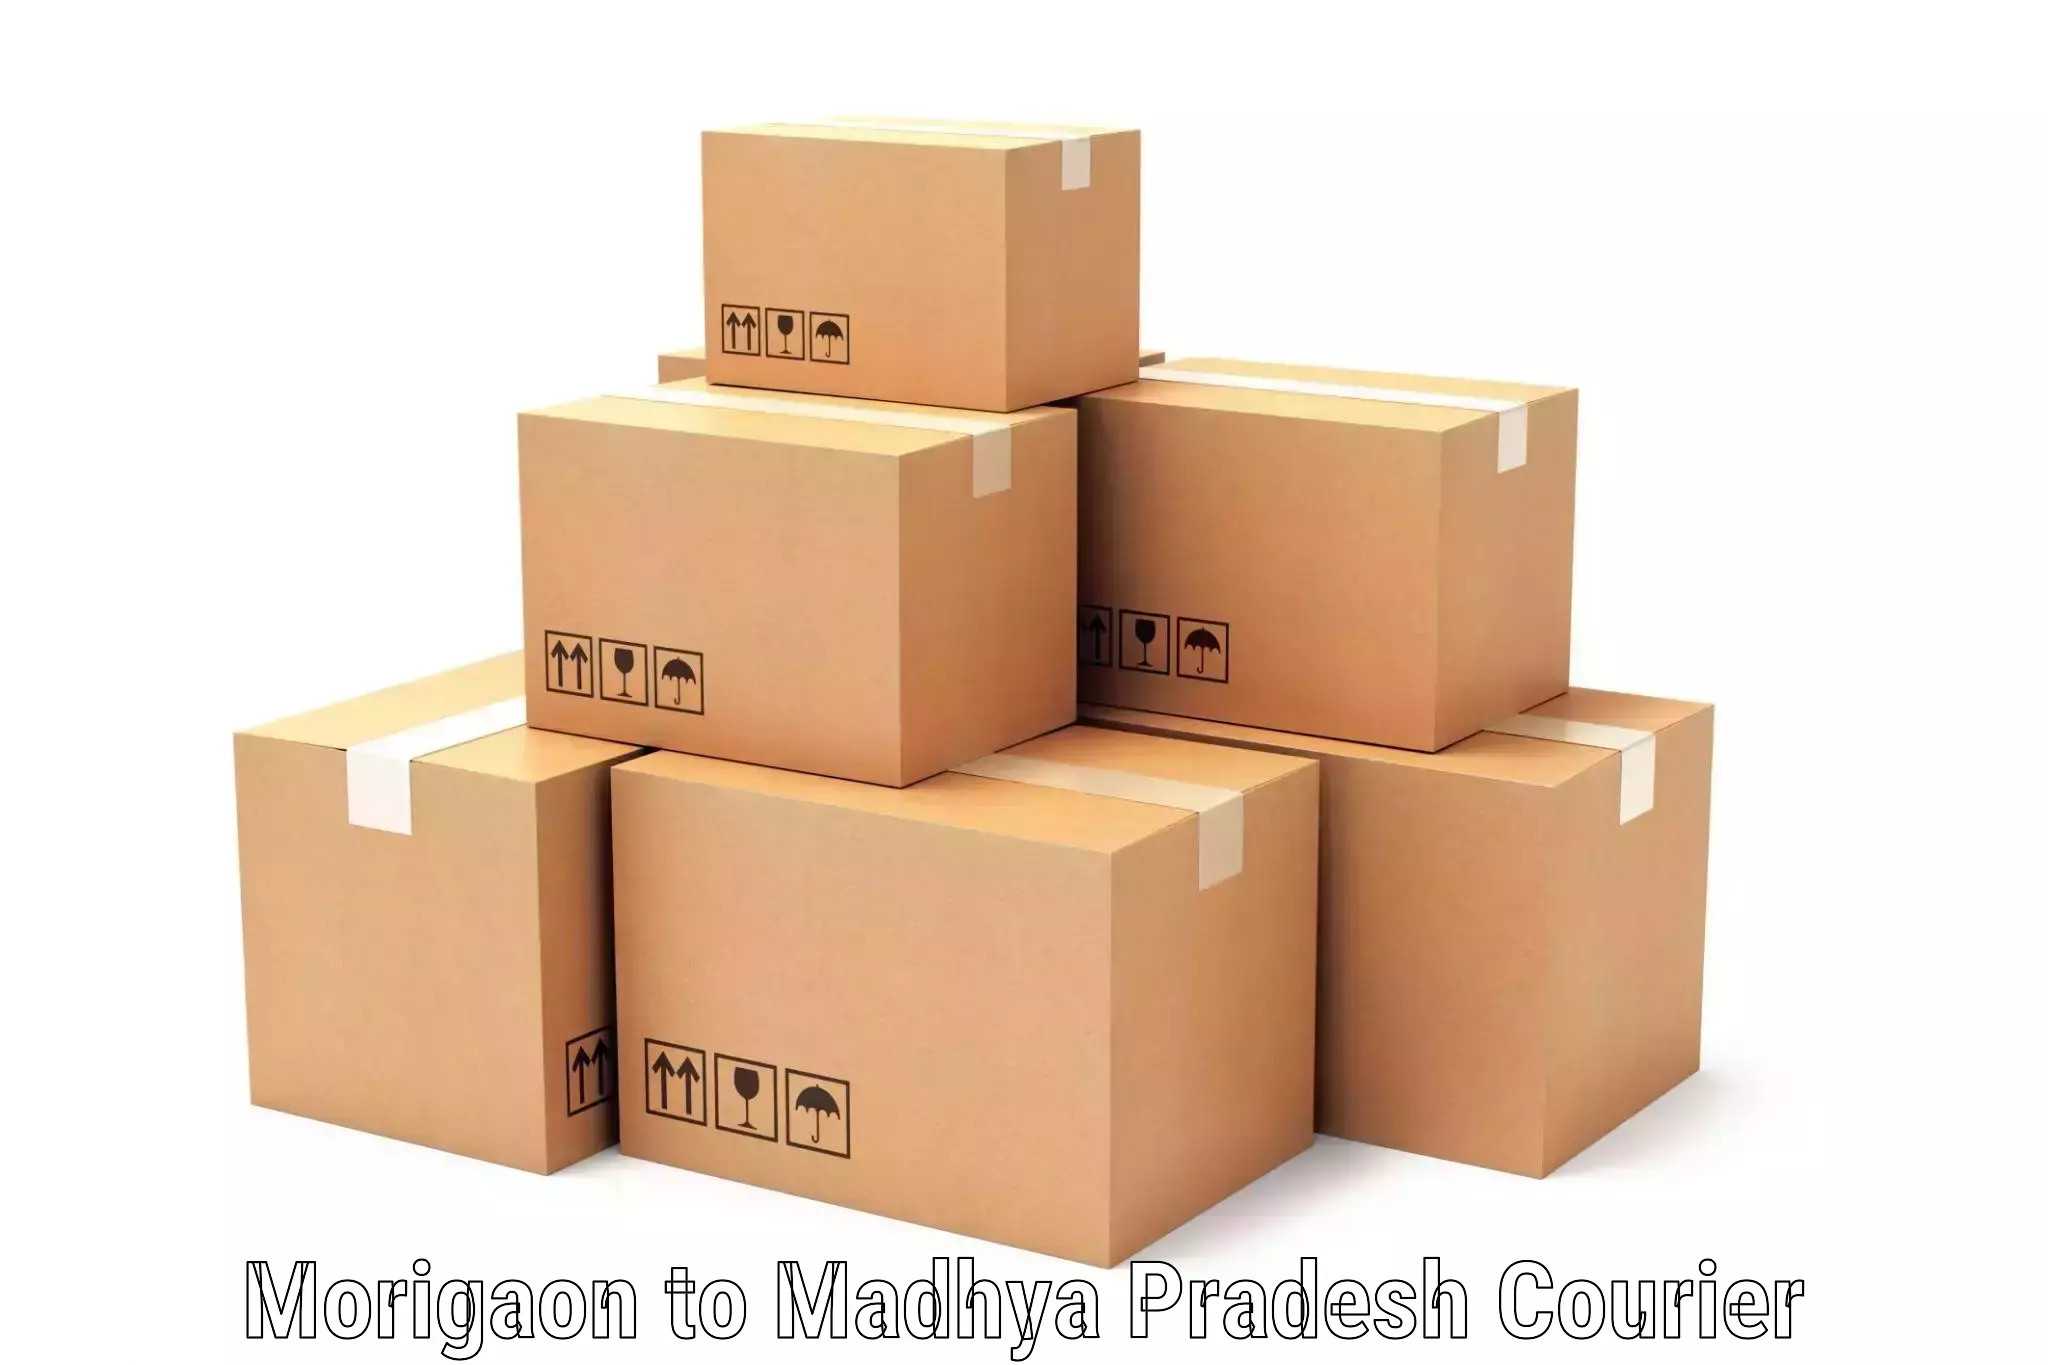 Same-day delivery solutions Morigaon to Ashoknagar